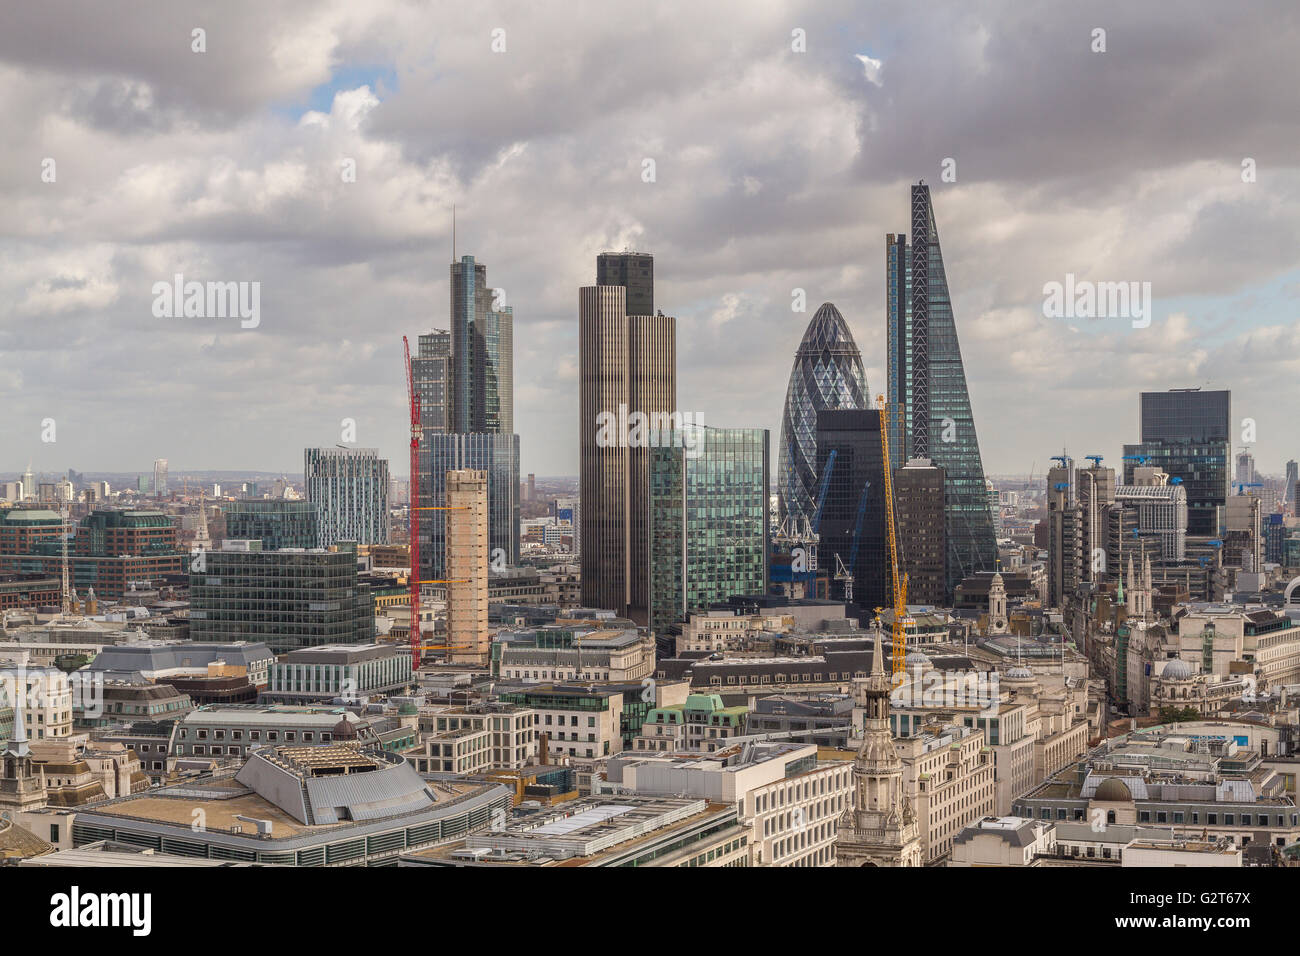 The City of London Skyline, London, UK Stock Photo - Alamy